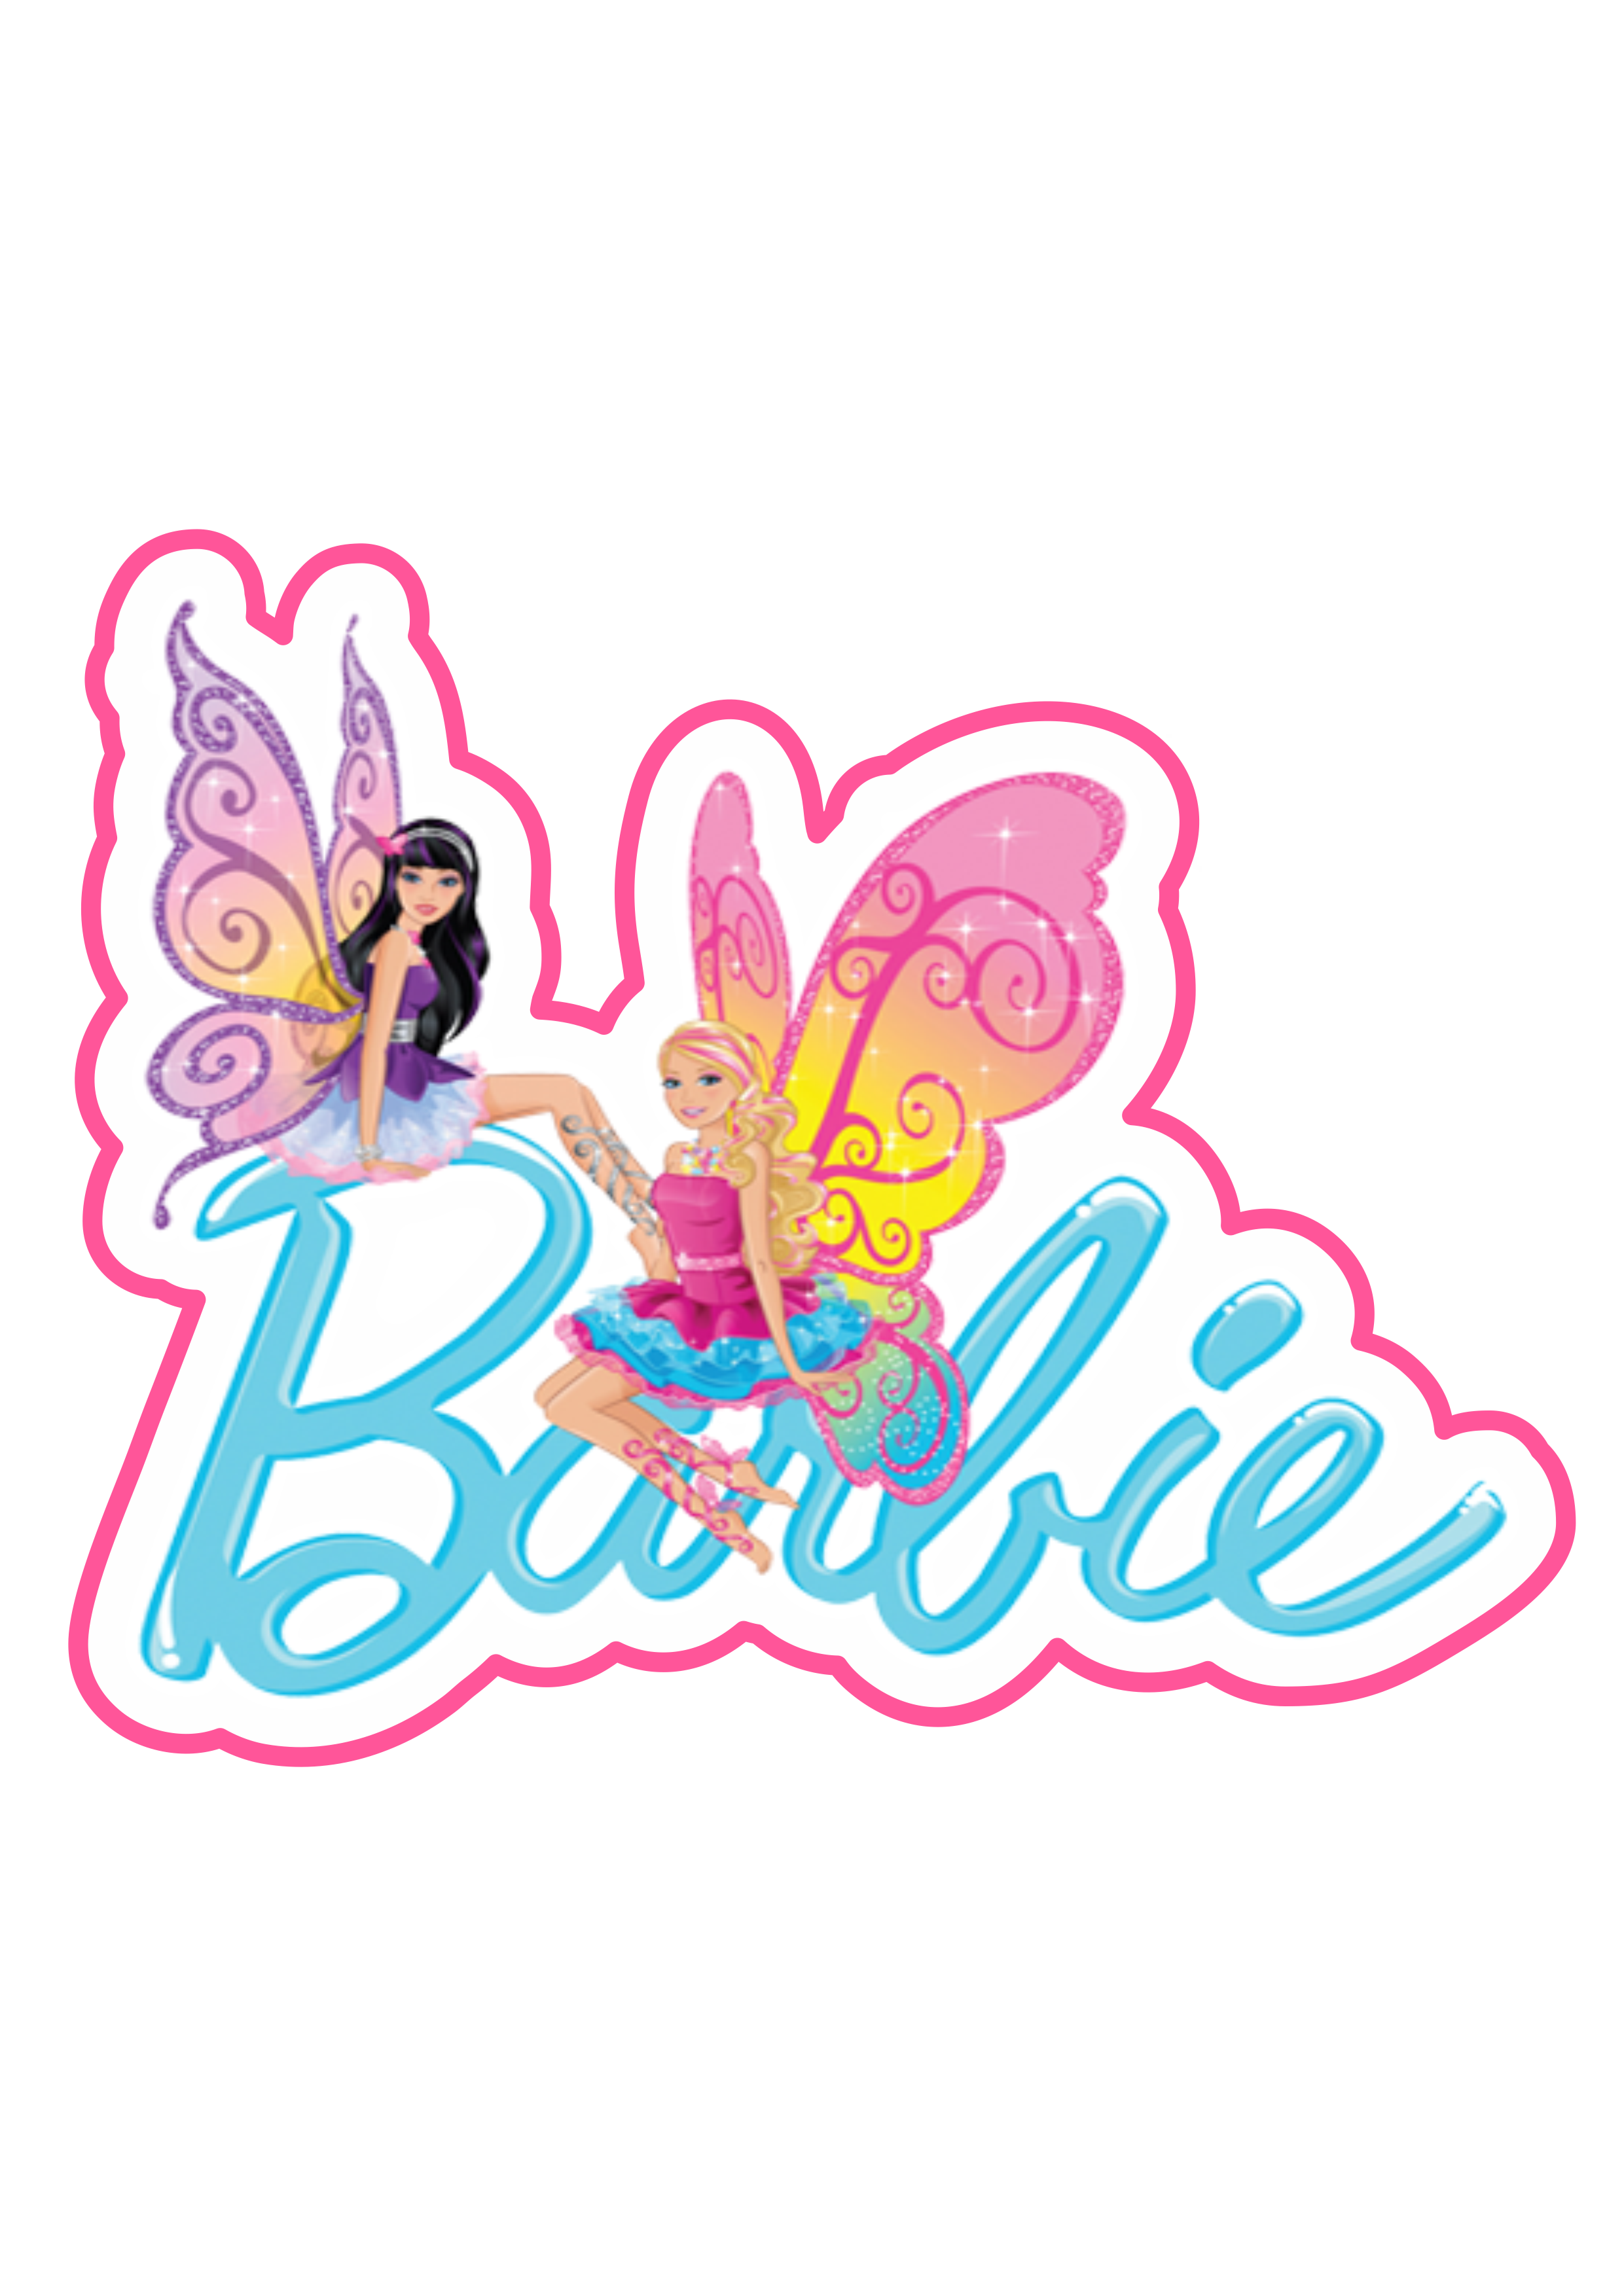 Barbie princesas borboletas imagem fundo transparente para designer e decorações png